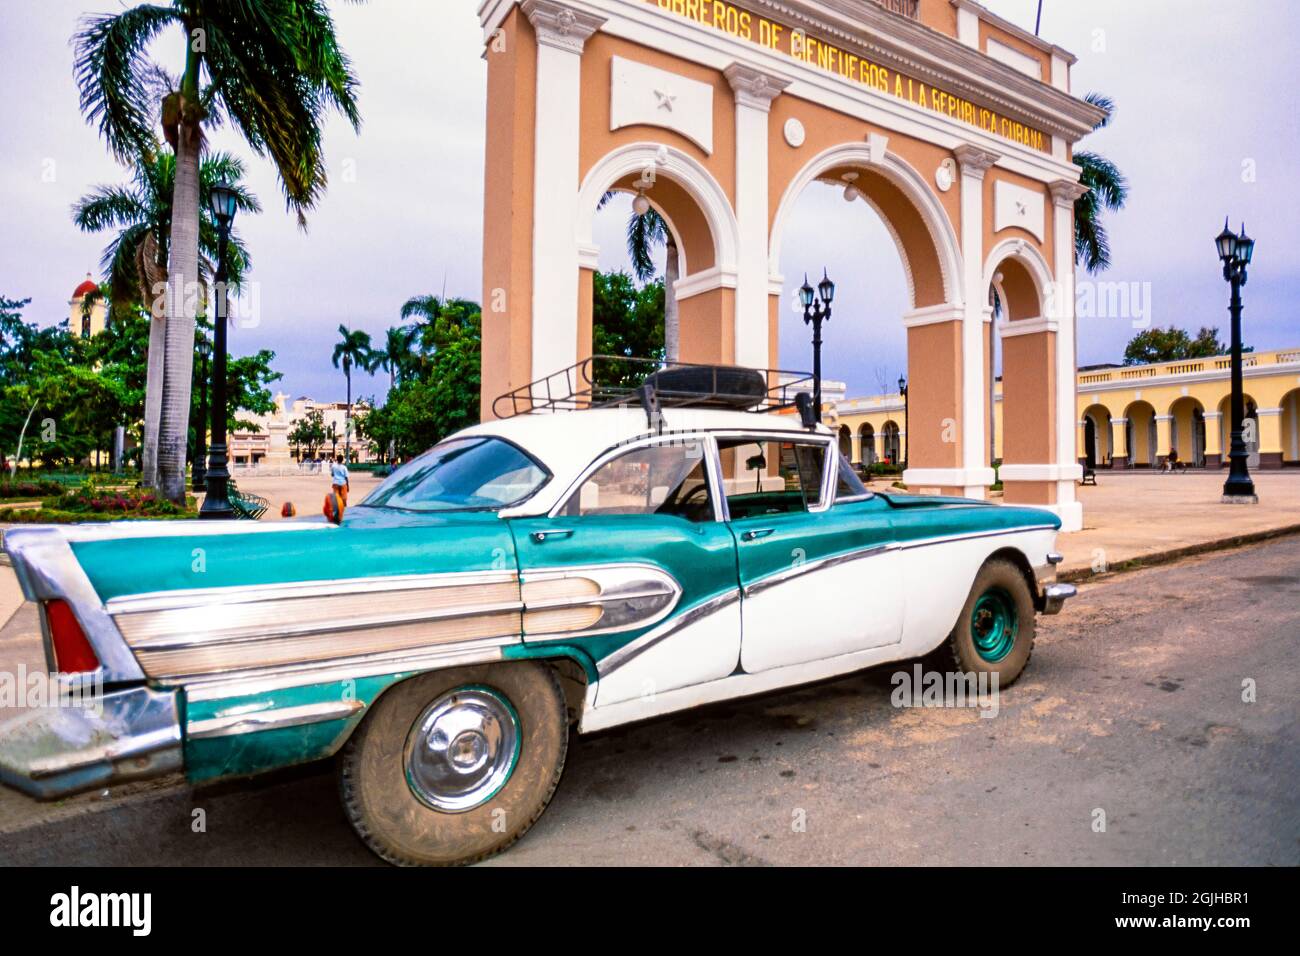 Vintage american car, 1957 Chevrolet BelAir, parque Jose Marti, Cienfuegos, cuba Stock Photo